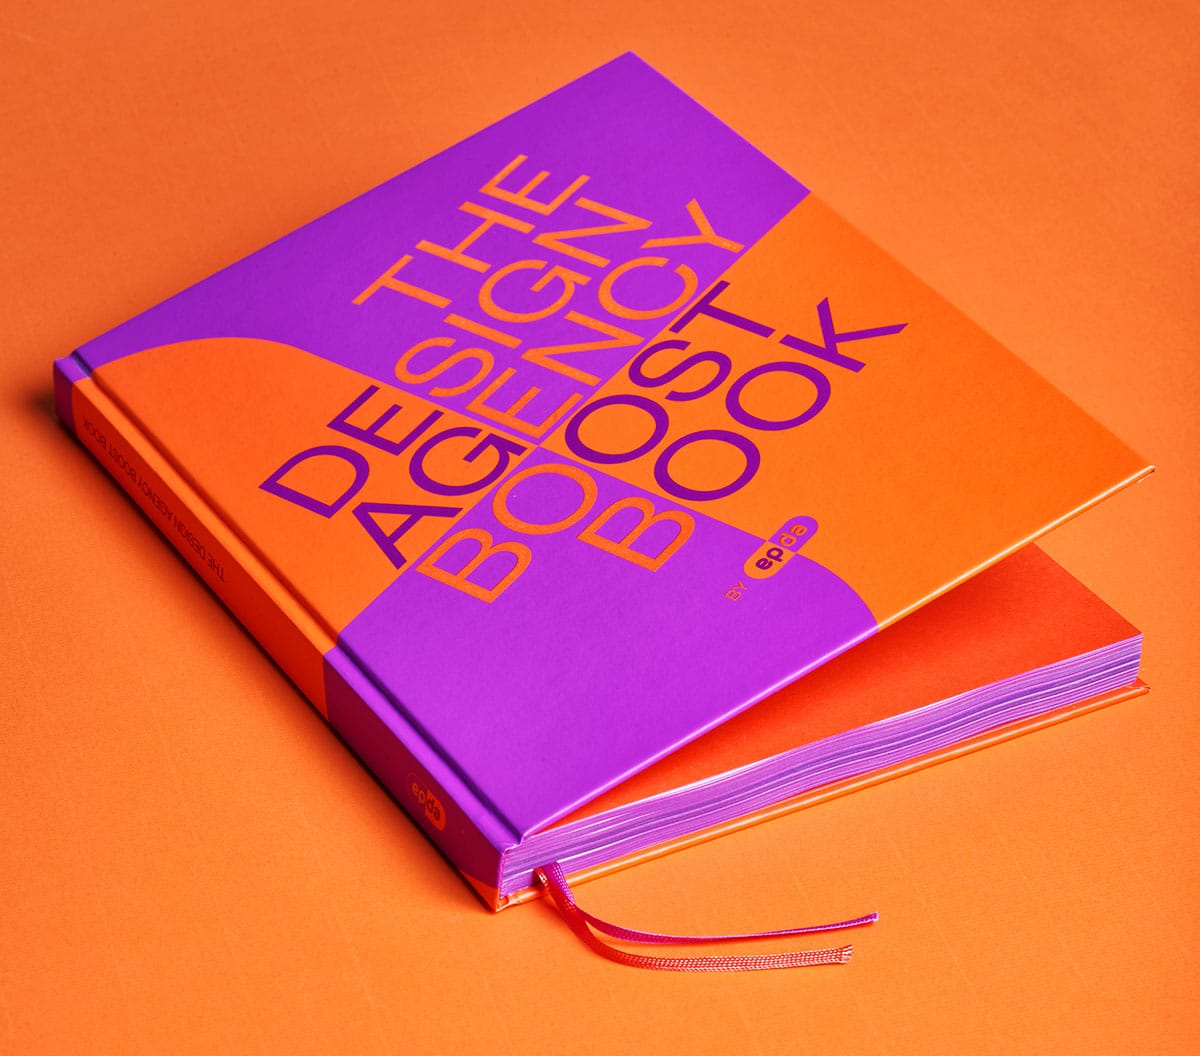 das Buchcover vor orangenem Hintergrund